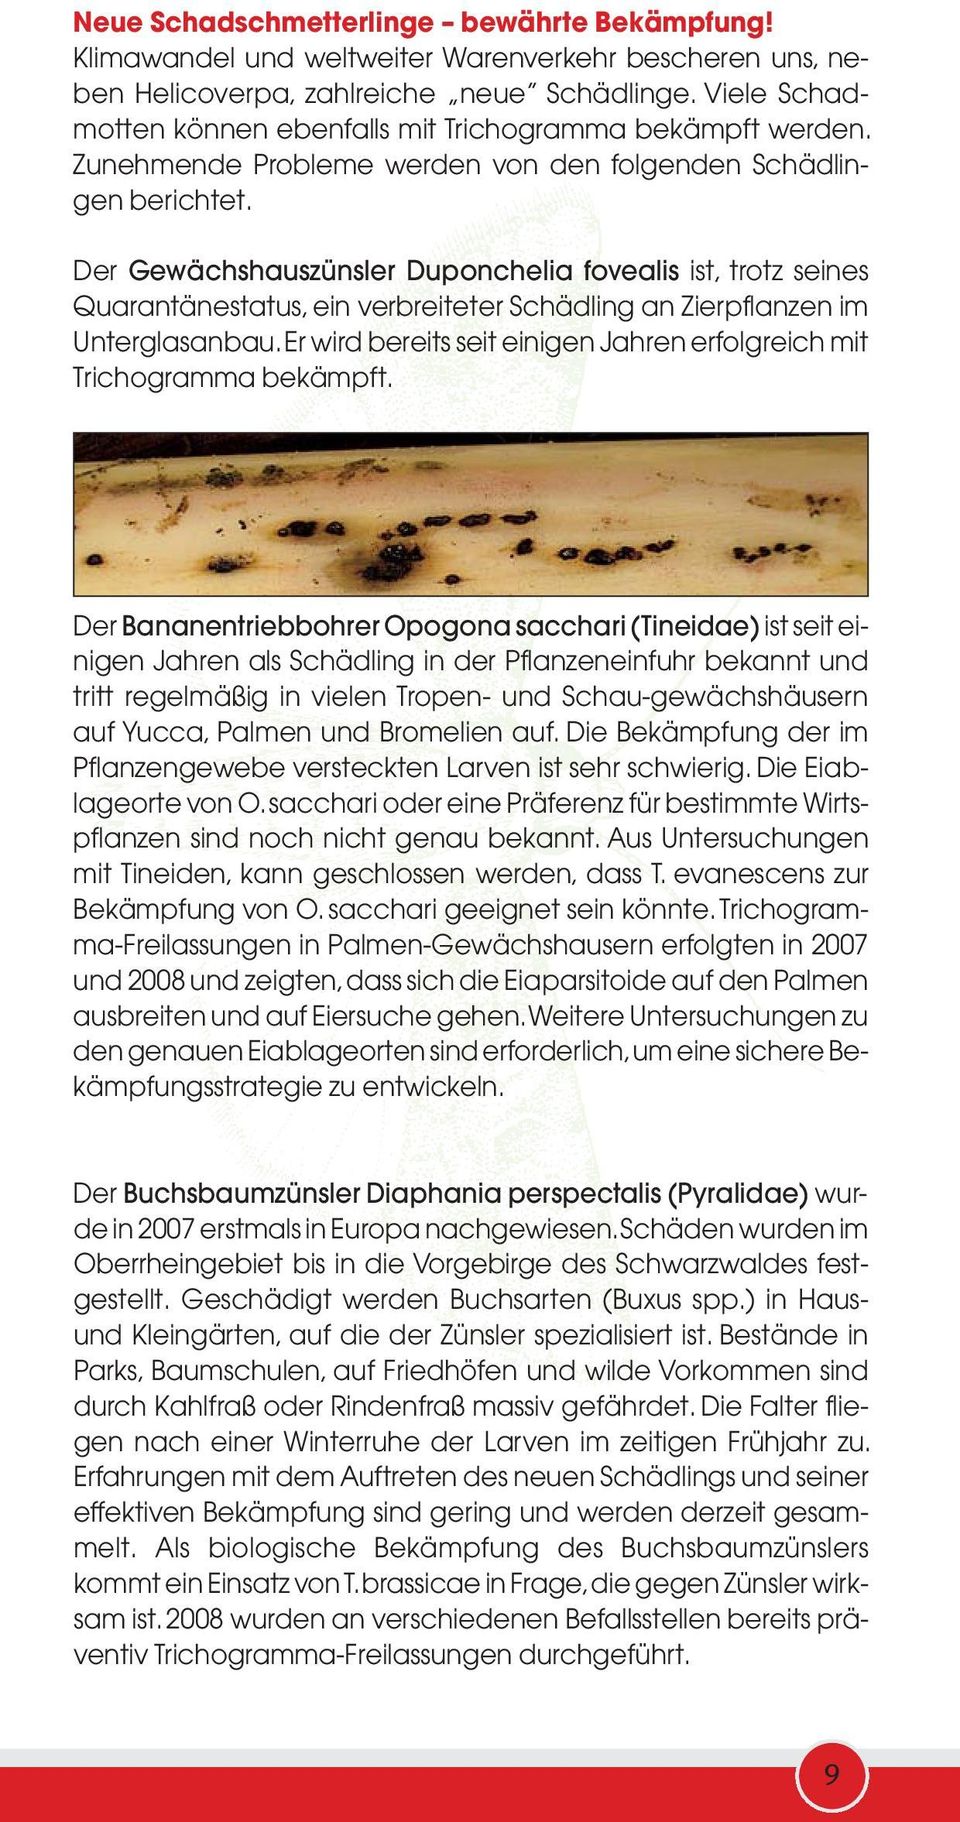 Der Gewächshauszünsler Duponchelia fovealis ist, trotz seines Quarantänestatus, ein verbreiteter Schädling an Zierpflanzen im Unterglasanbau.